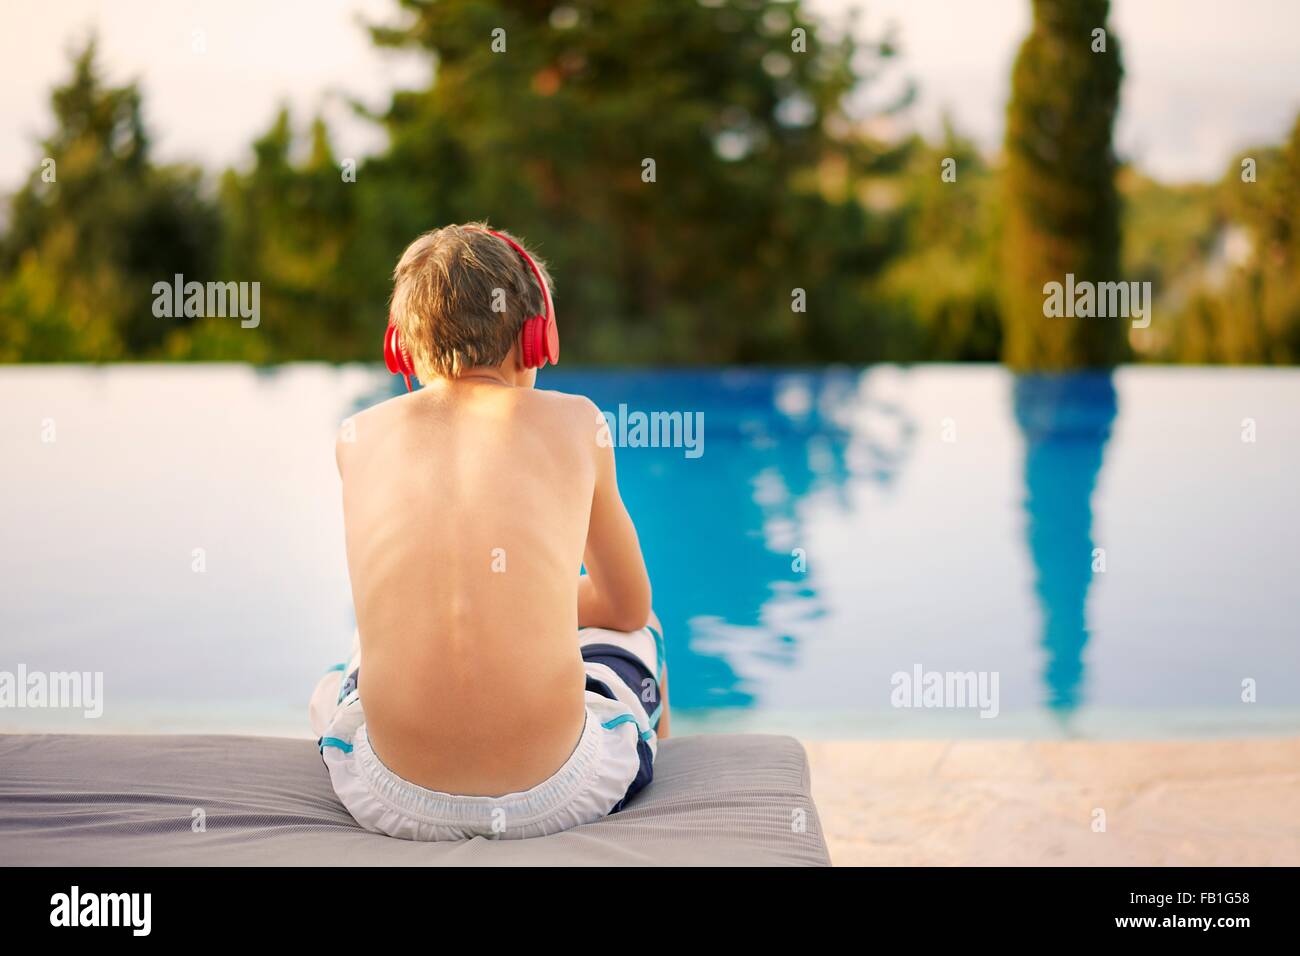 Vista trasera del adolescente usando audífonos sentado en piscina infinity Foto de stock